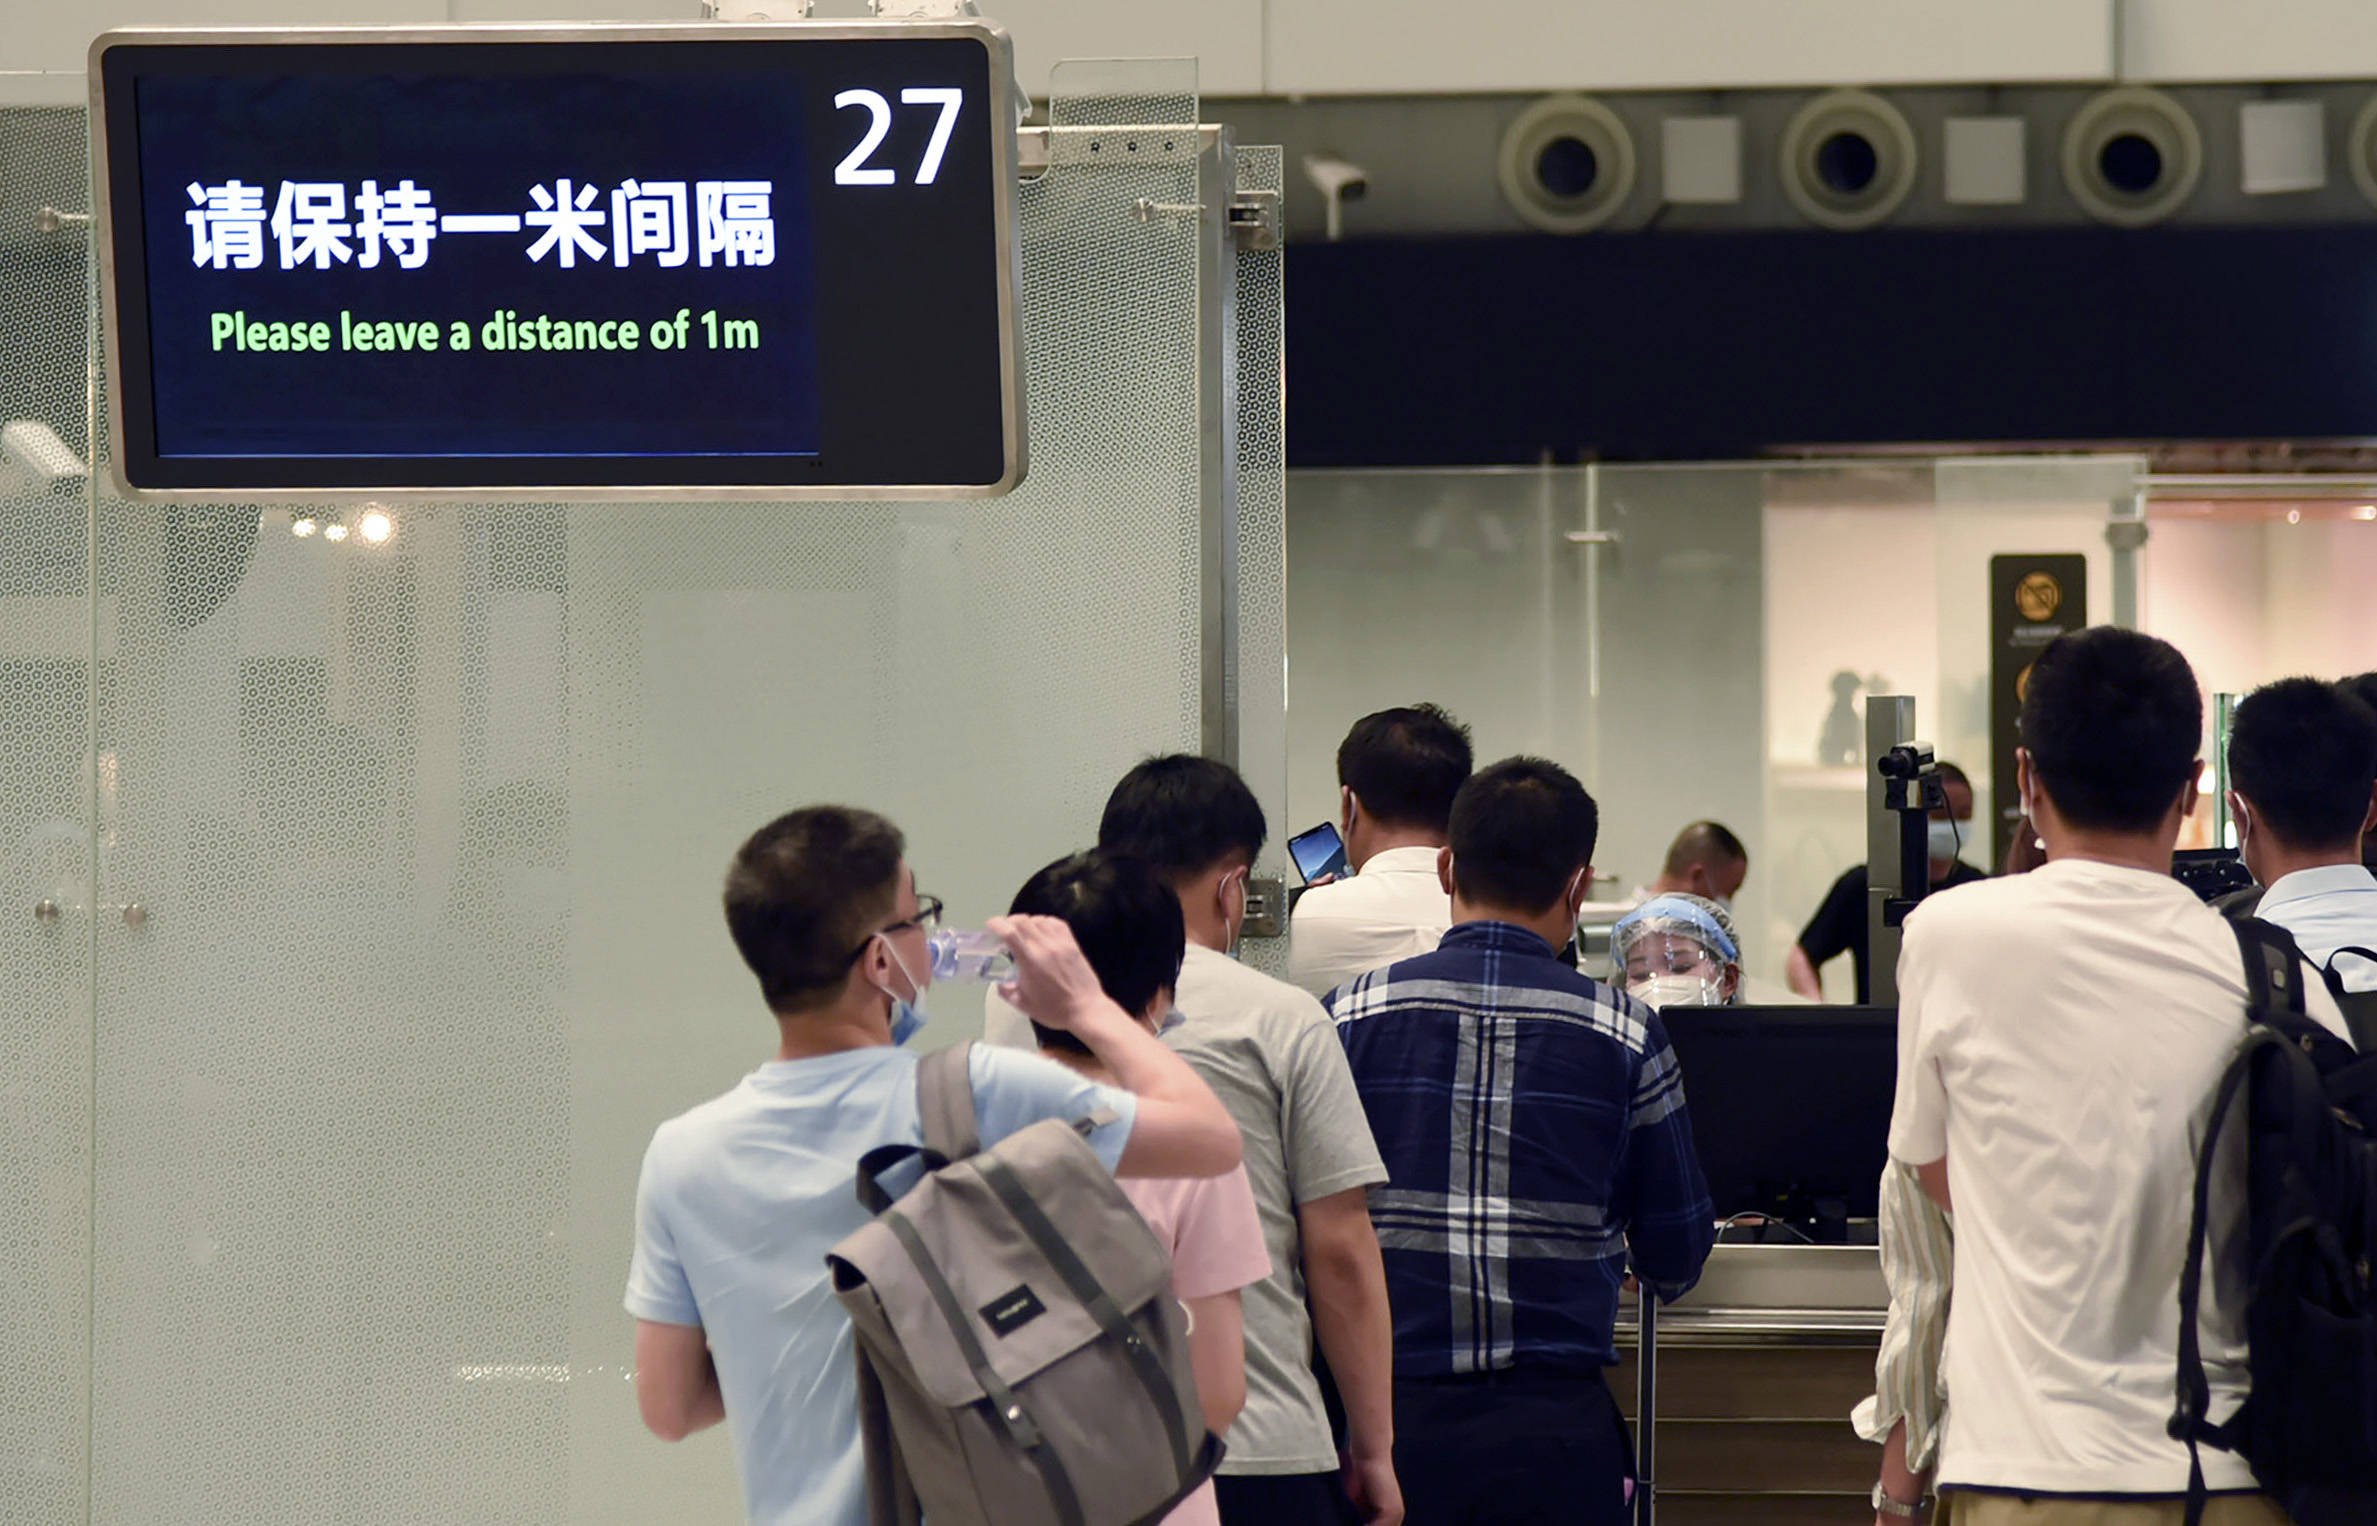 白云国际机场"全球最忙 疫情防控促中国航空业快速复苏